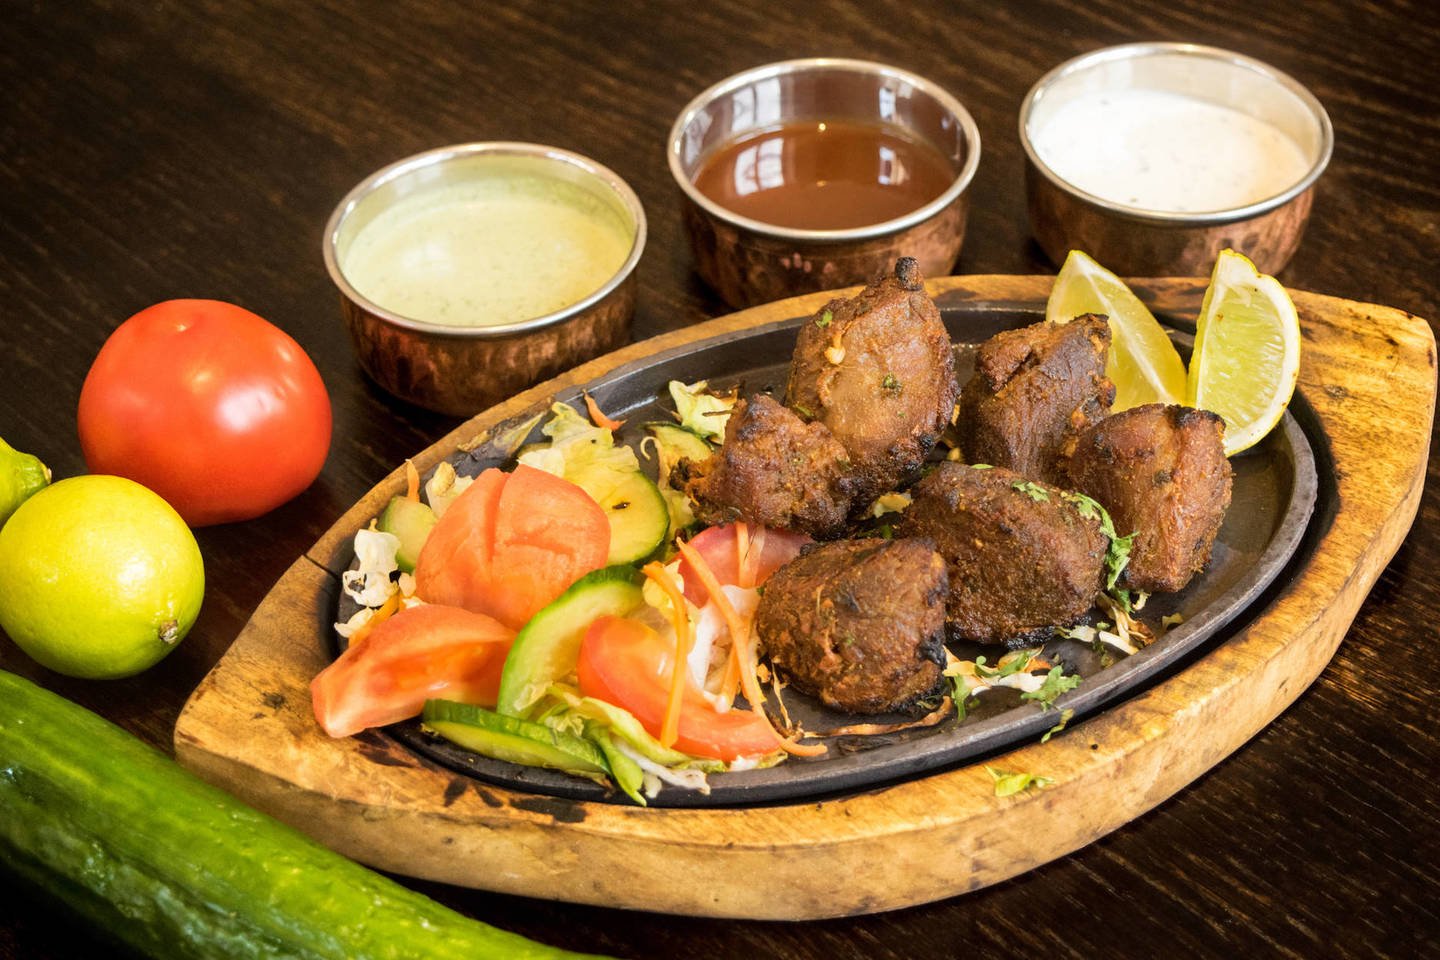  Indų patiekaluose naudojami bent septynių rūšių prieskoniai, o Tailando – gausu įvairių žolelių ir čili pipirų. Šie skoniai nėra artimi mėgstantiems tradicinį, lietuvišką maistą.